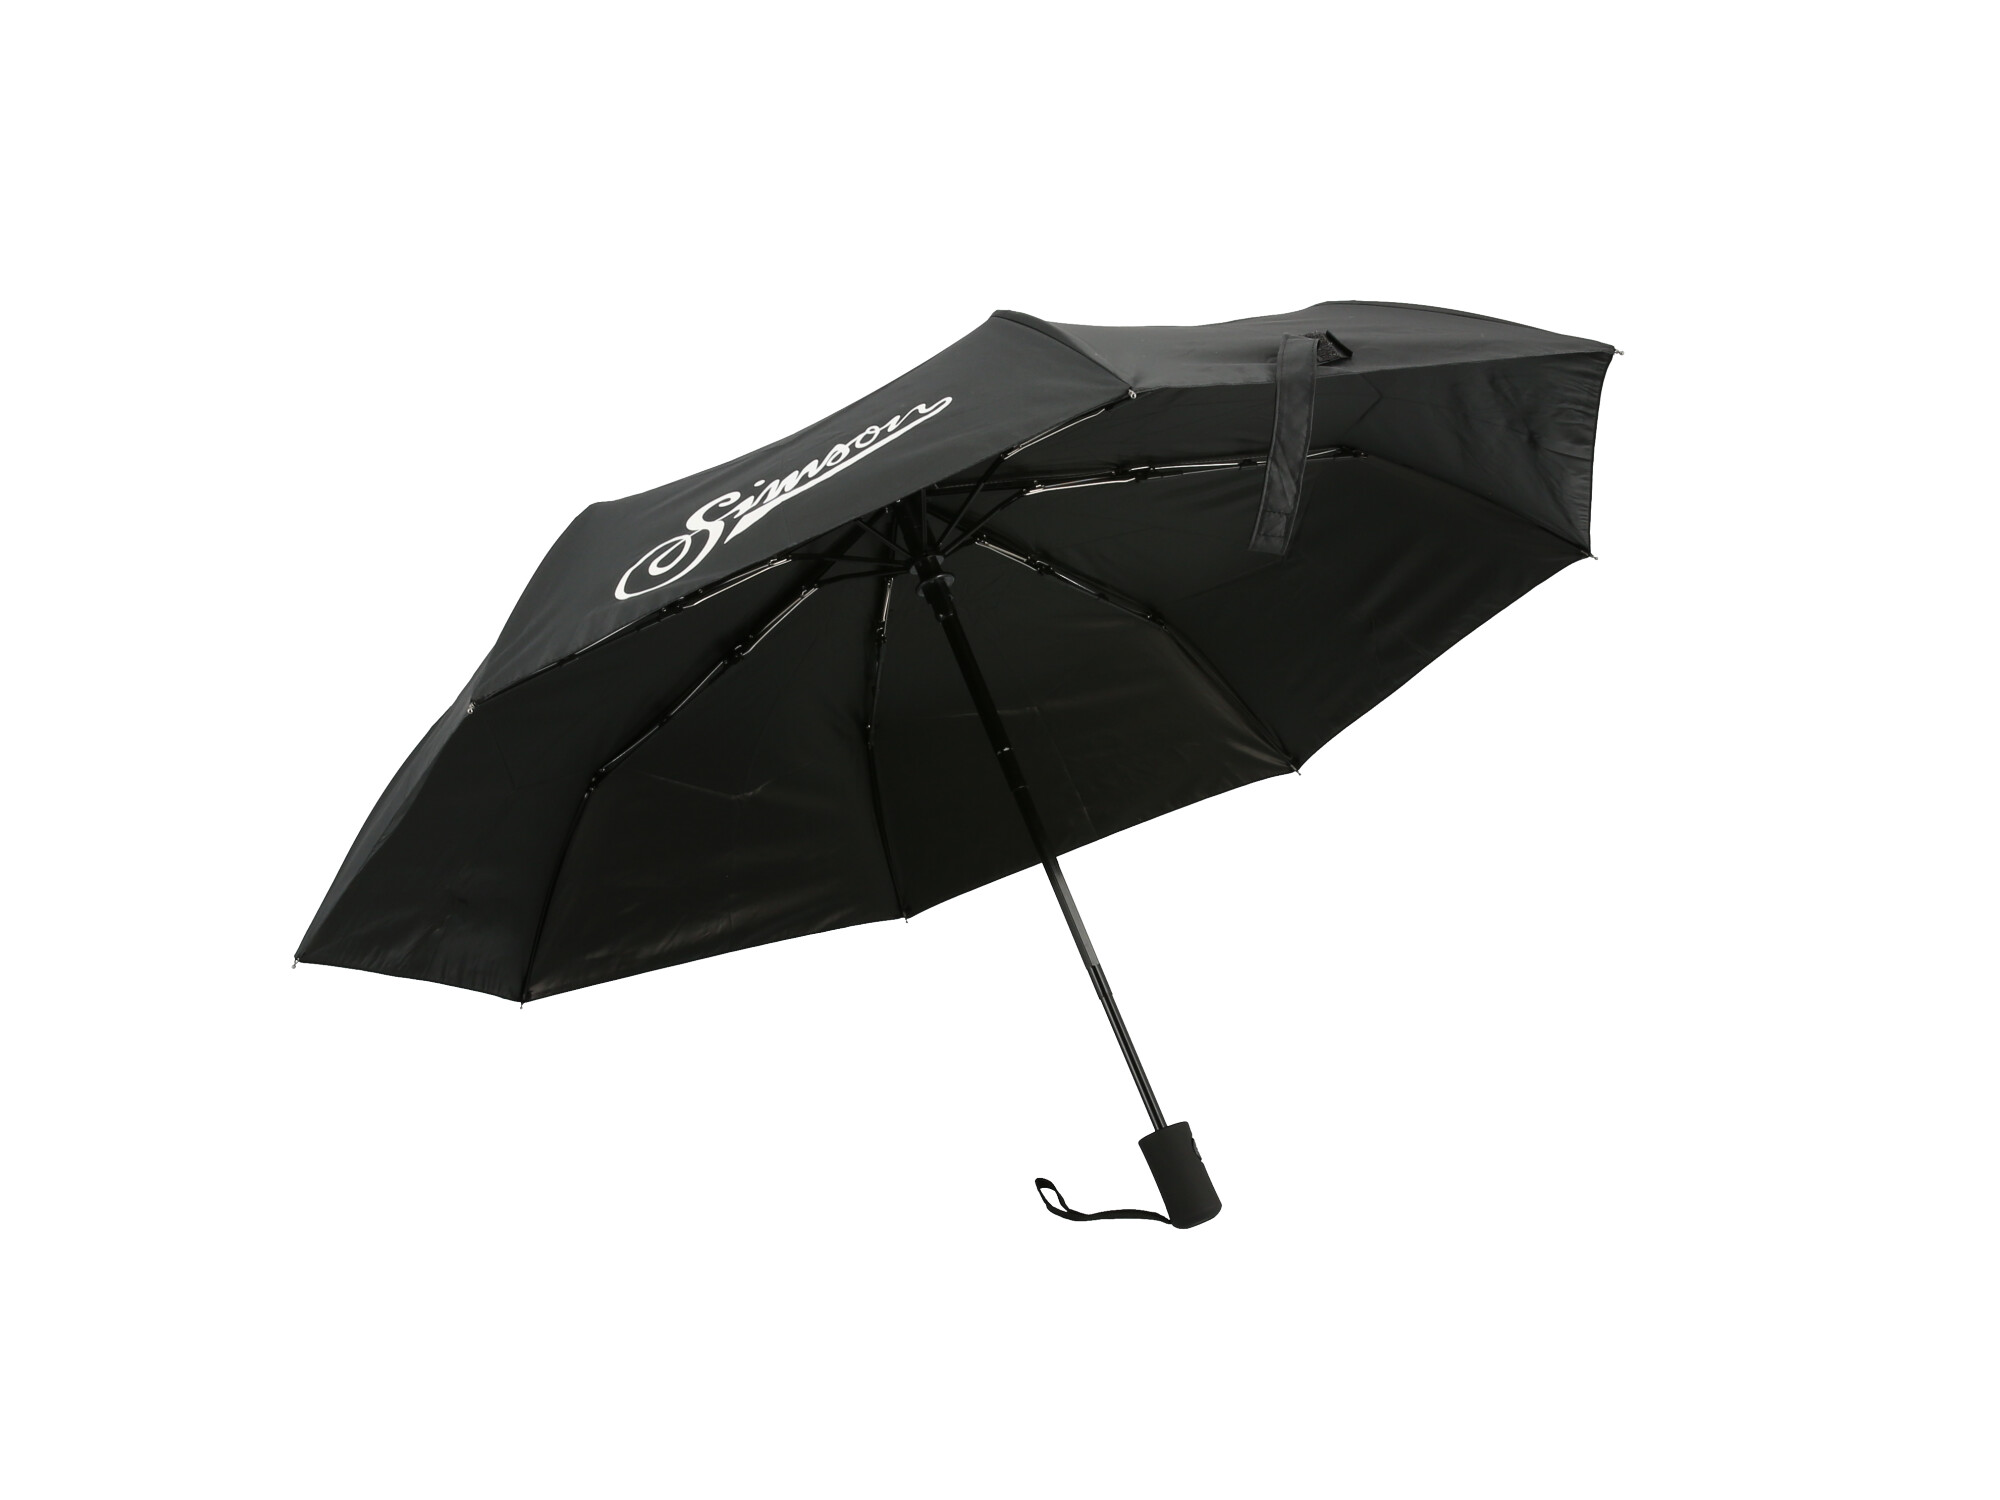 Regenschirm "Simson", Durchmesser Ø98 cm, Farbe Schwarz, Art.-Nr.: 10070650 - 360° Bild